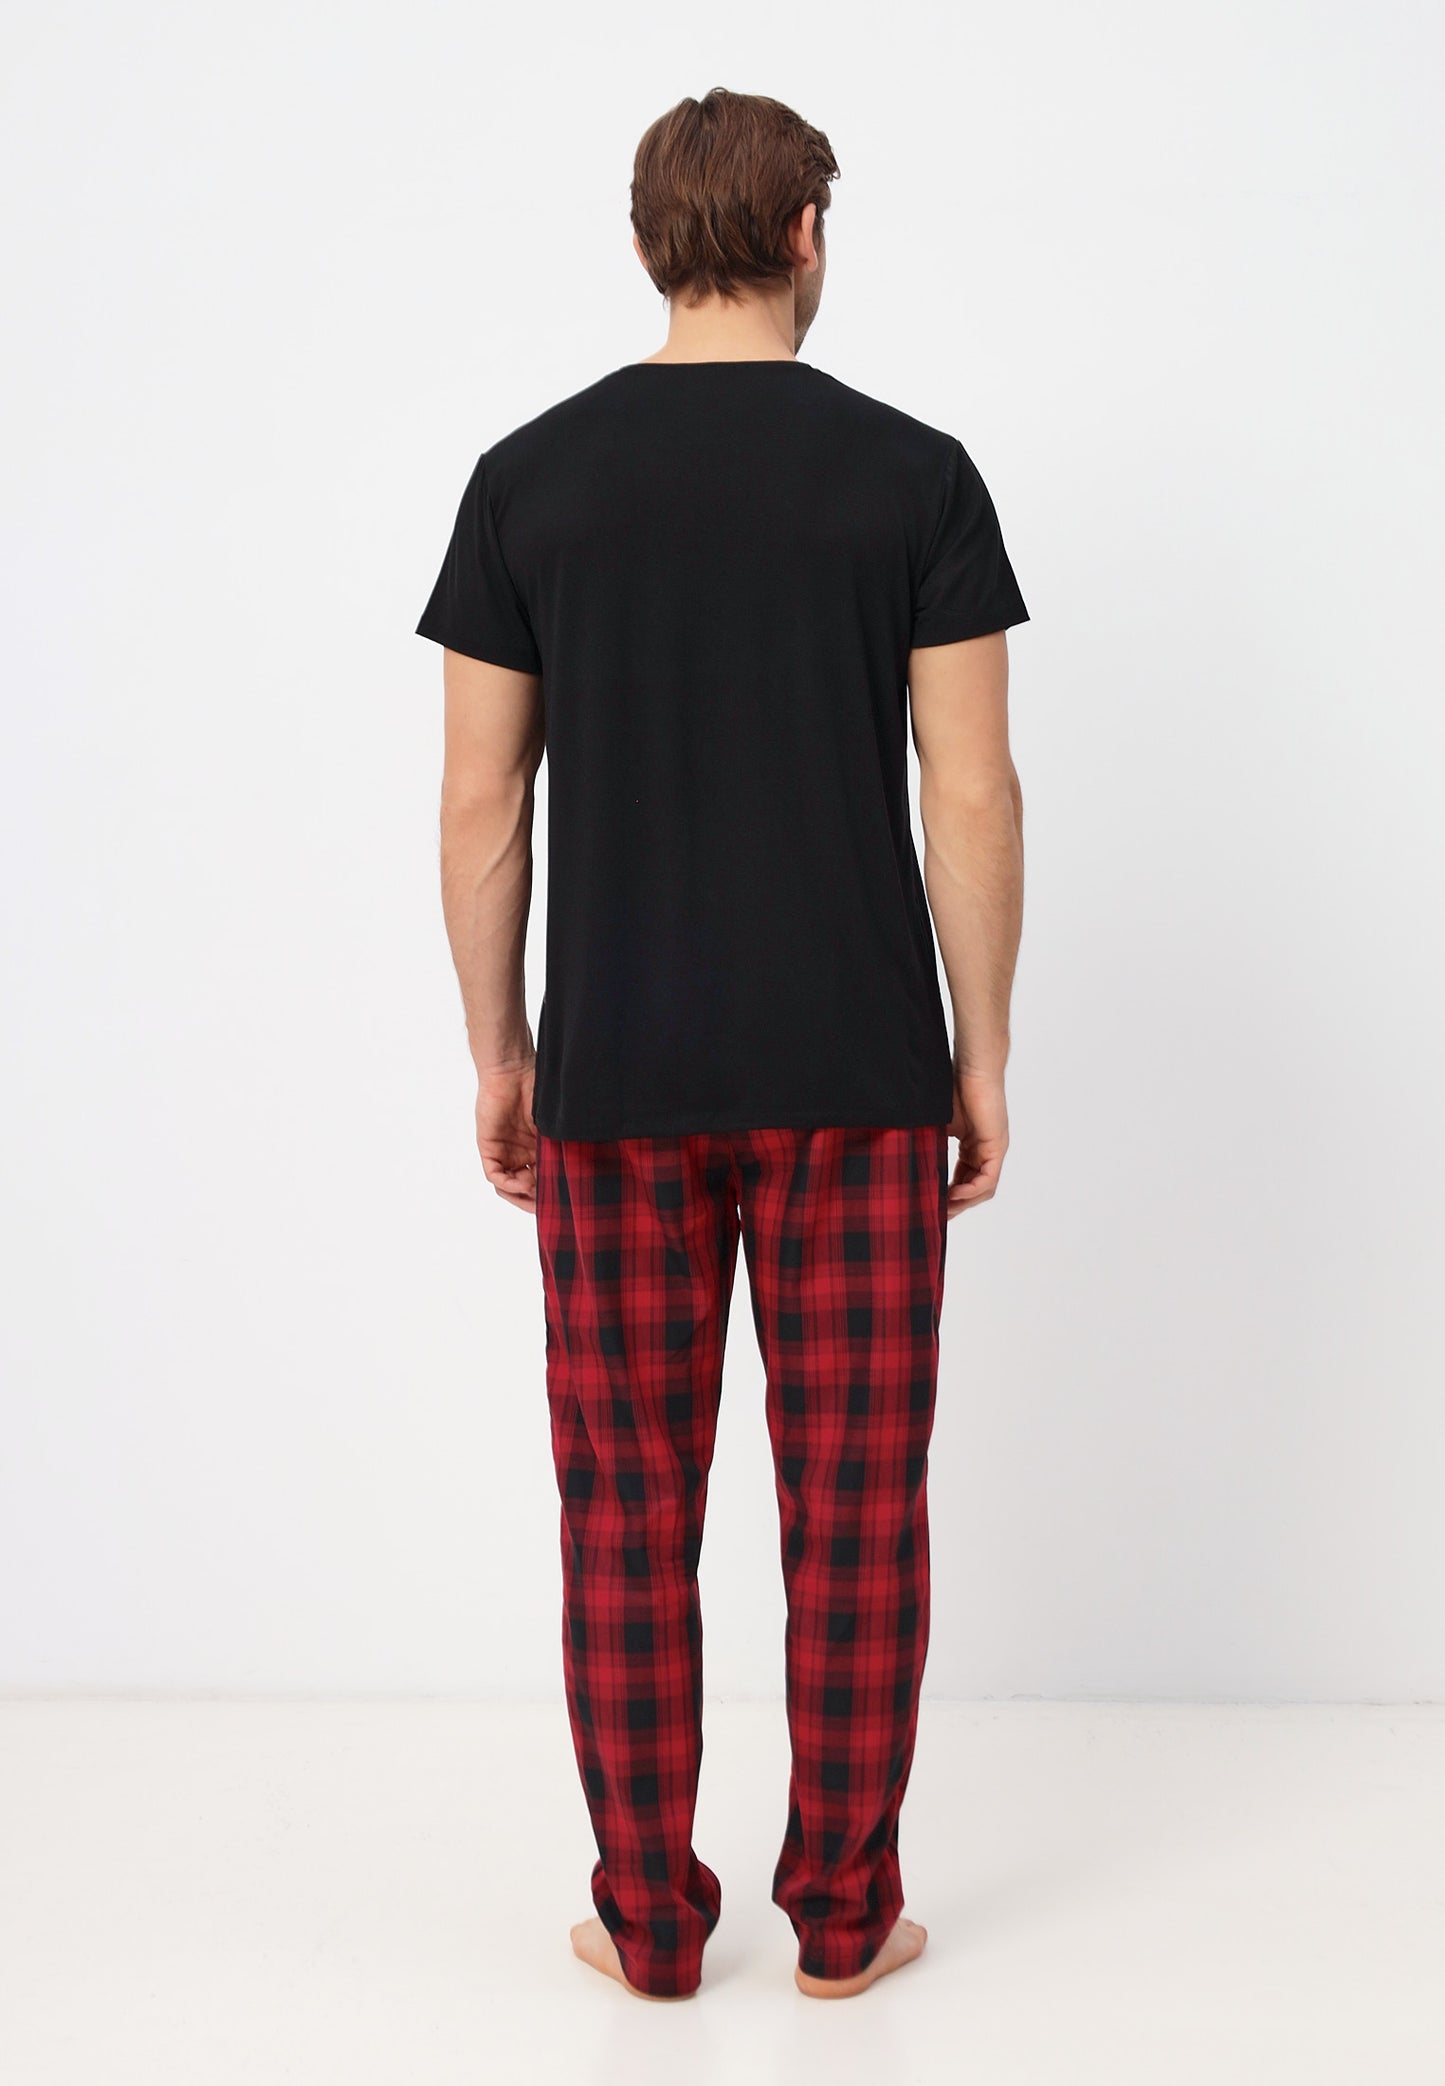 Zweiteiliges Set Herren Pyjama Set - Kurzarm Shirt und lange Karierte Pyjamahose aus Baumwolle LMS-6436 Schwarz/Rot